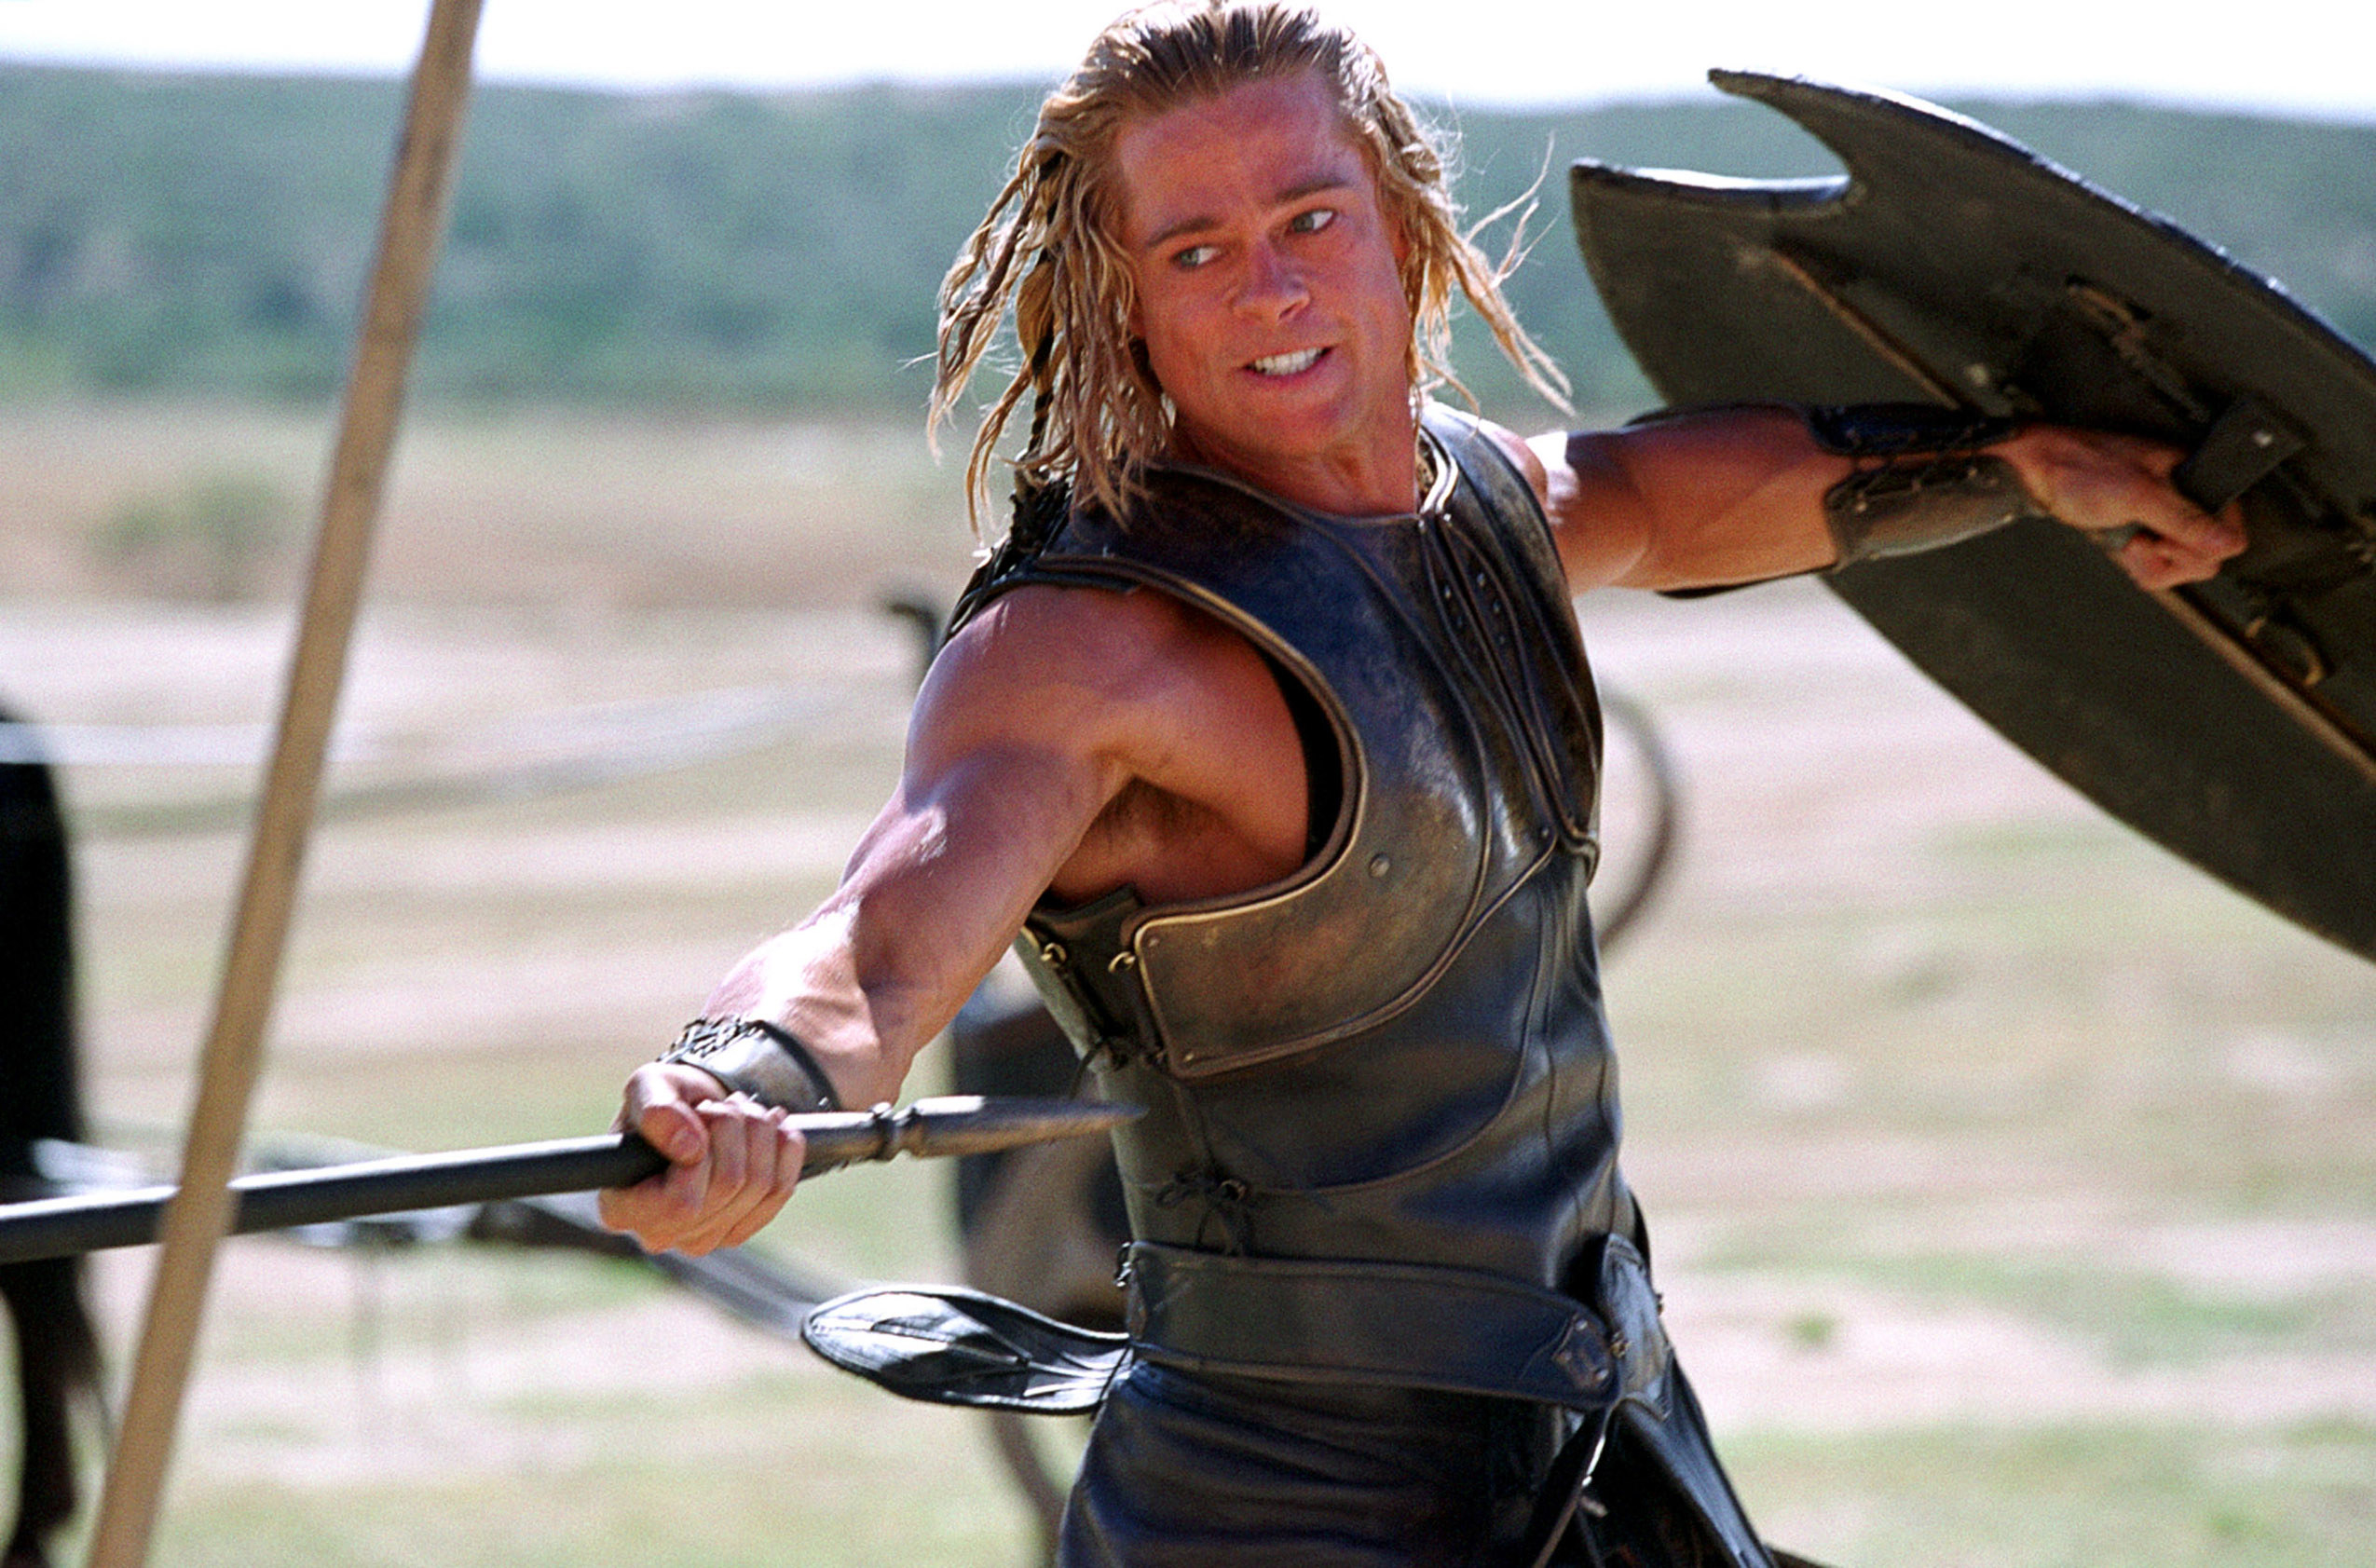 Brad Pitt as Achilles, wielding a spear in battle